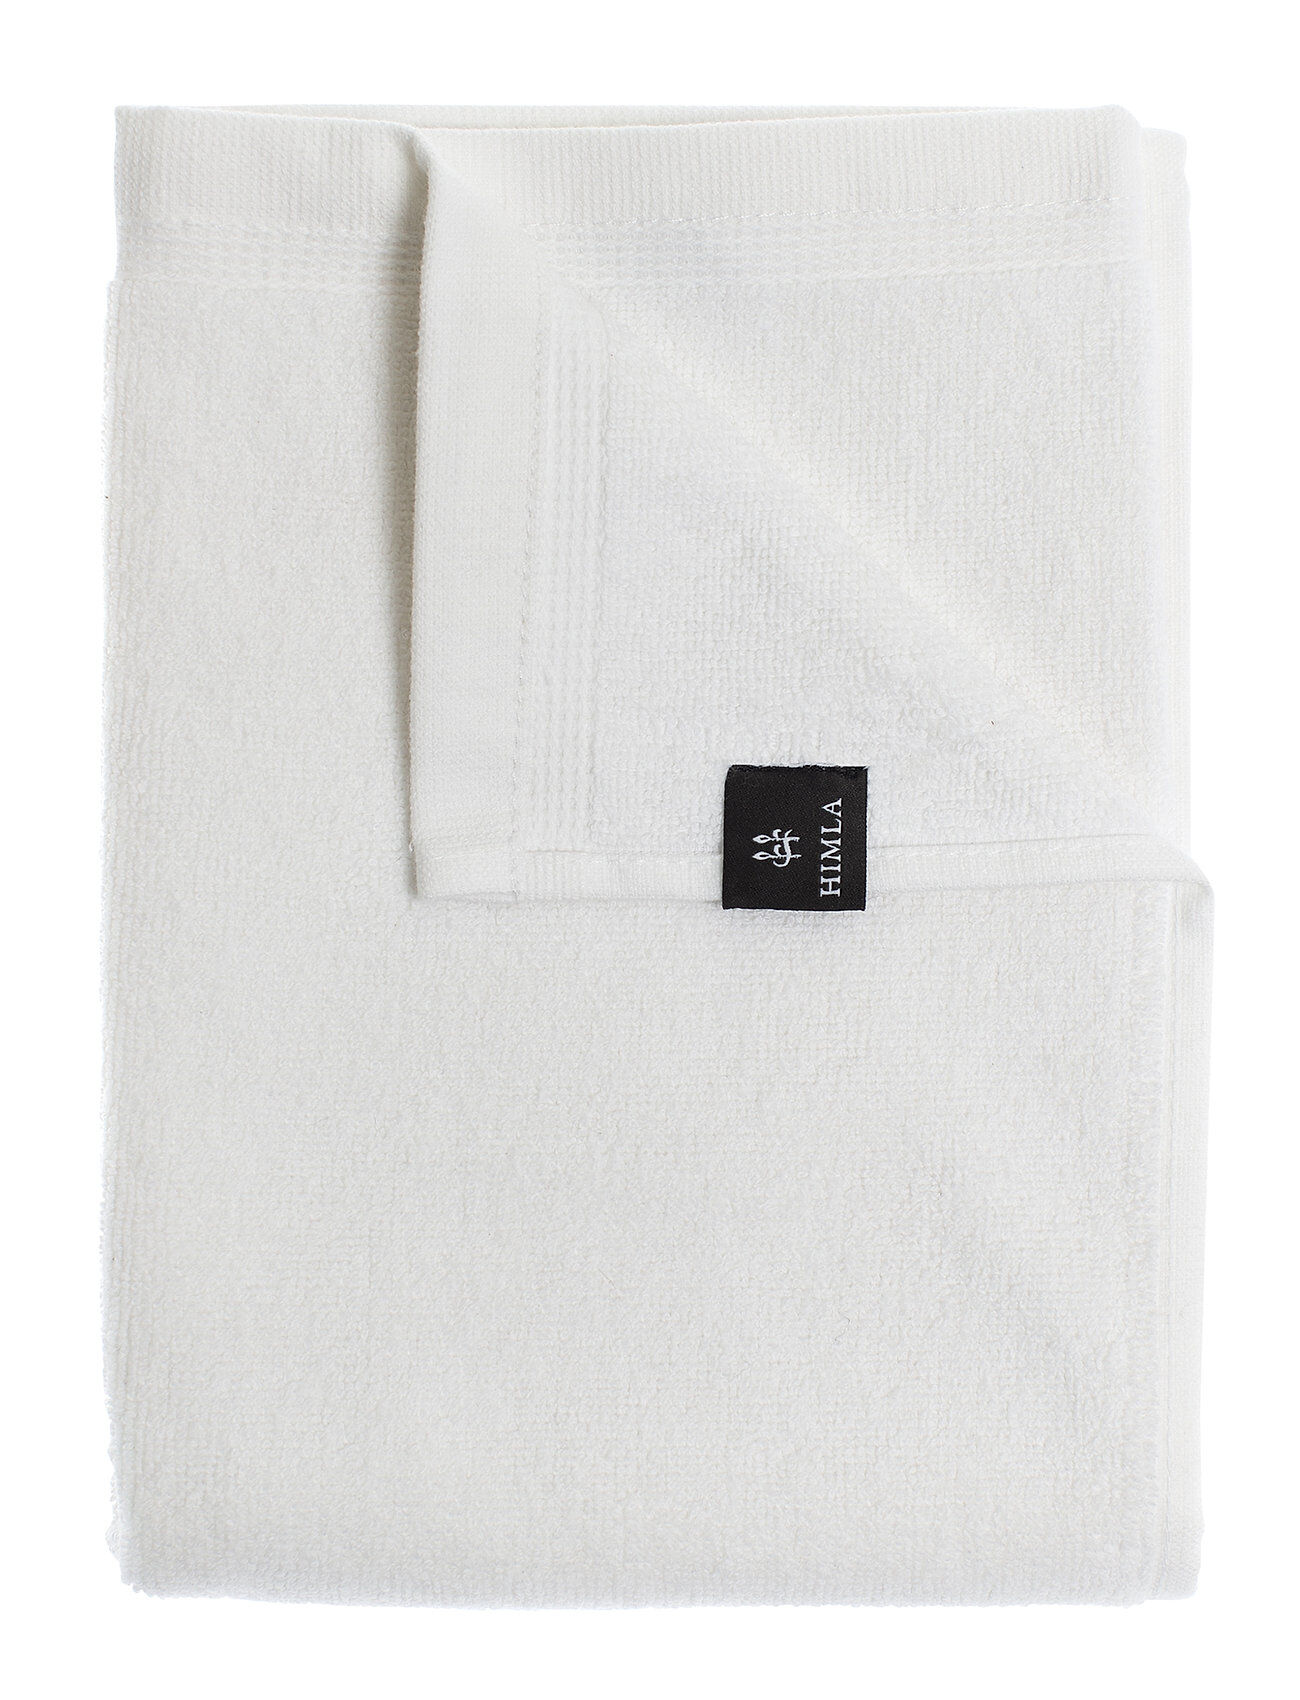 Himla Lina Towel Home Textiles Bathroom Textiles Towels Hvit Himla